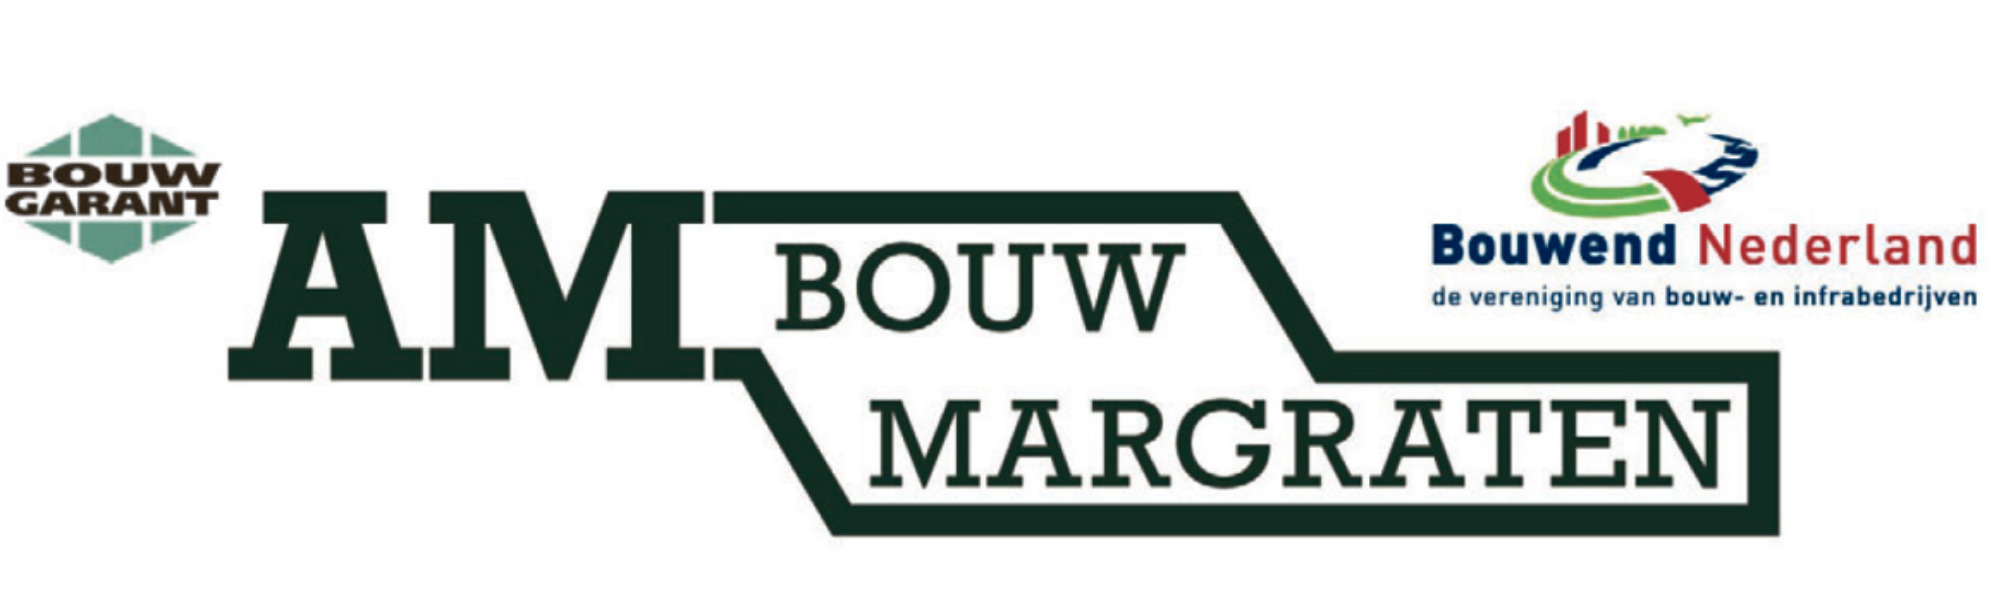 AM Bouw Margraten